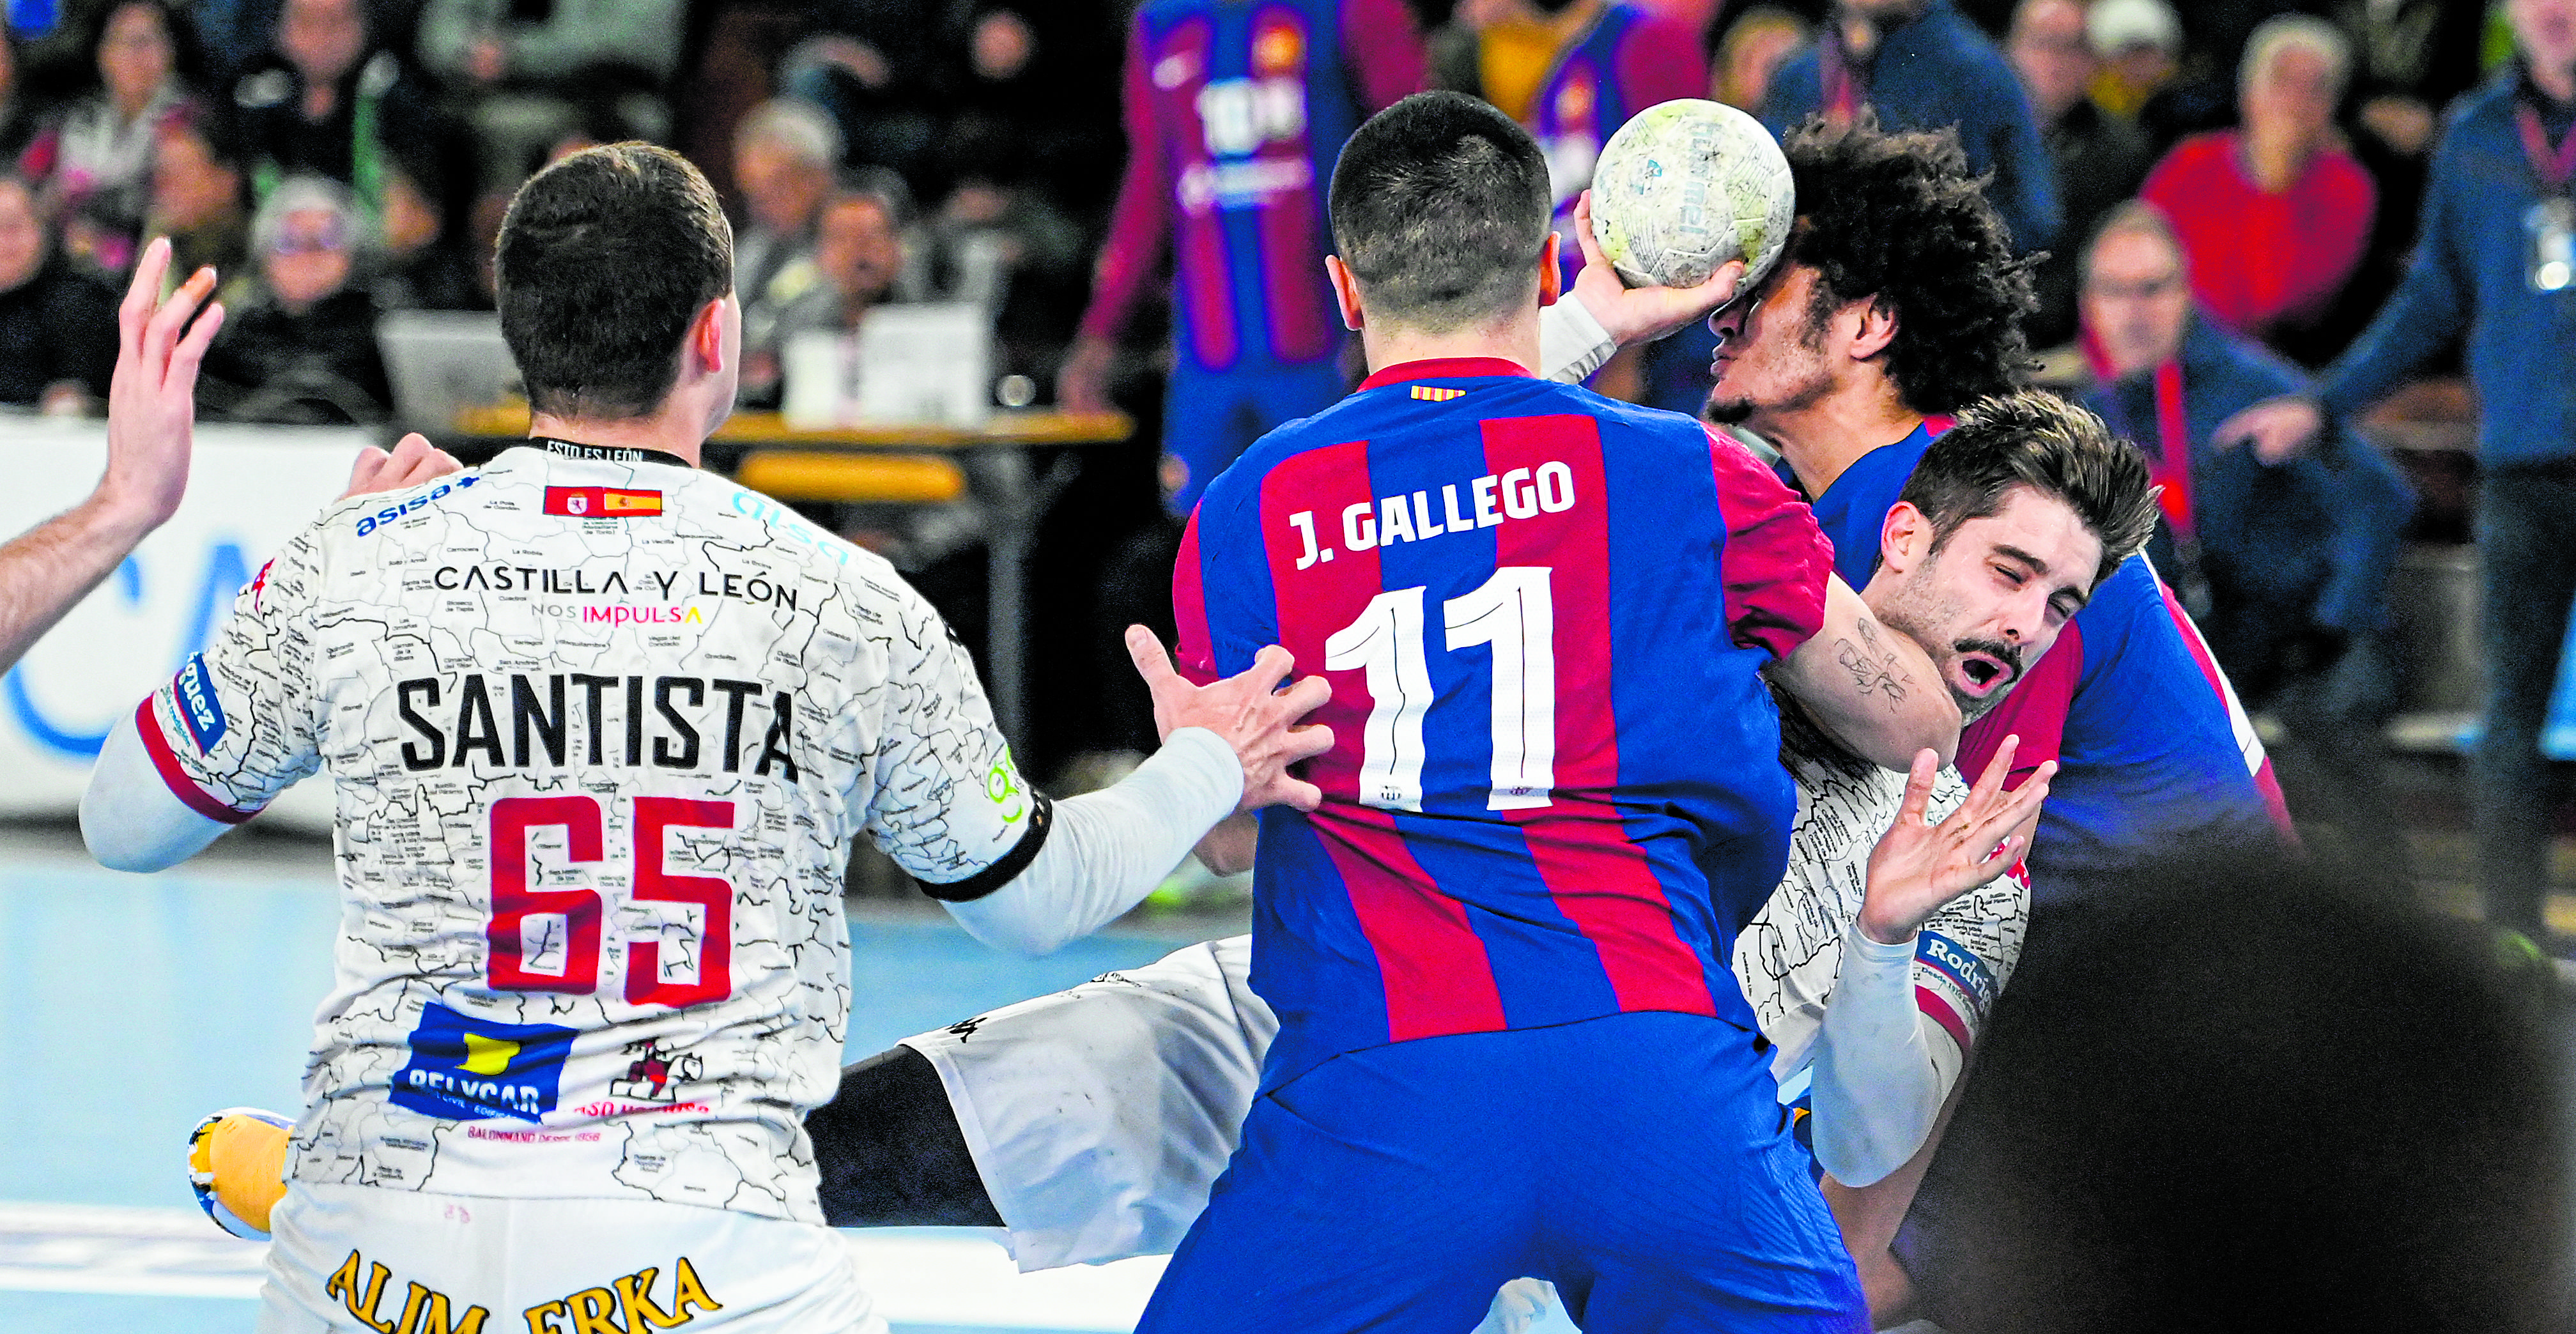 Castro intenta penetrar en la defensa del Barcelona. | SAÚL ARÉN